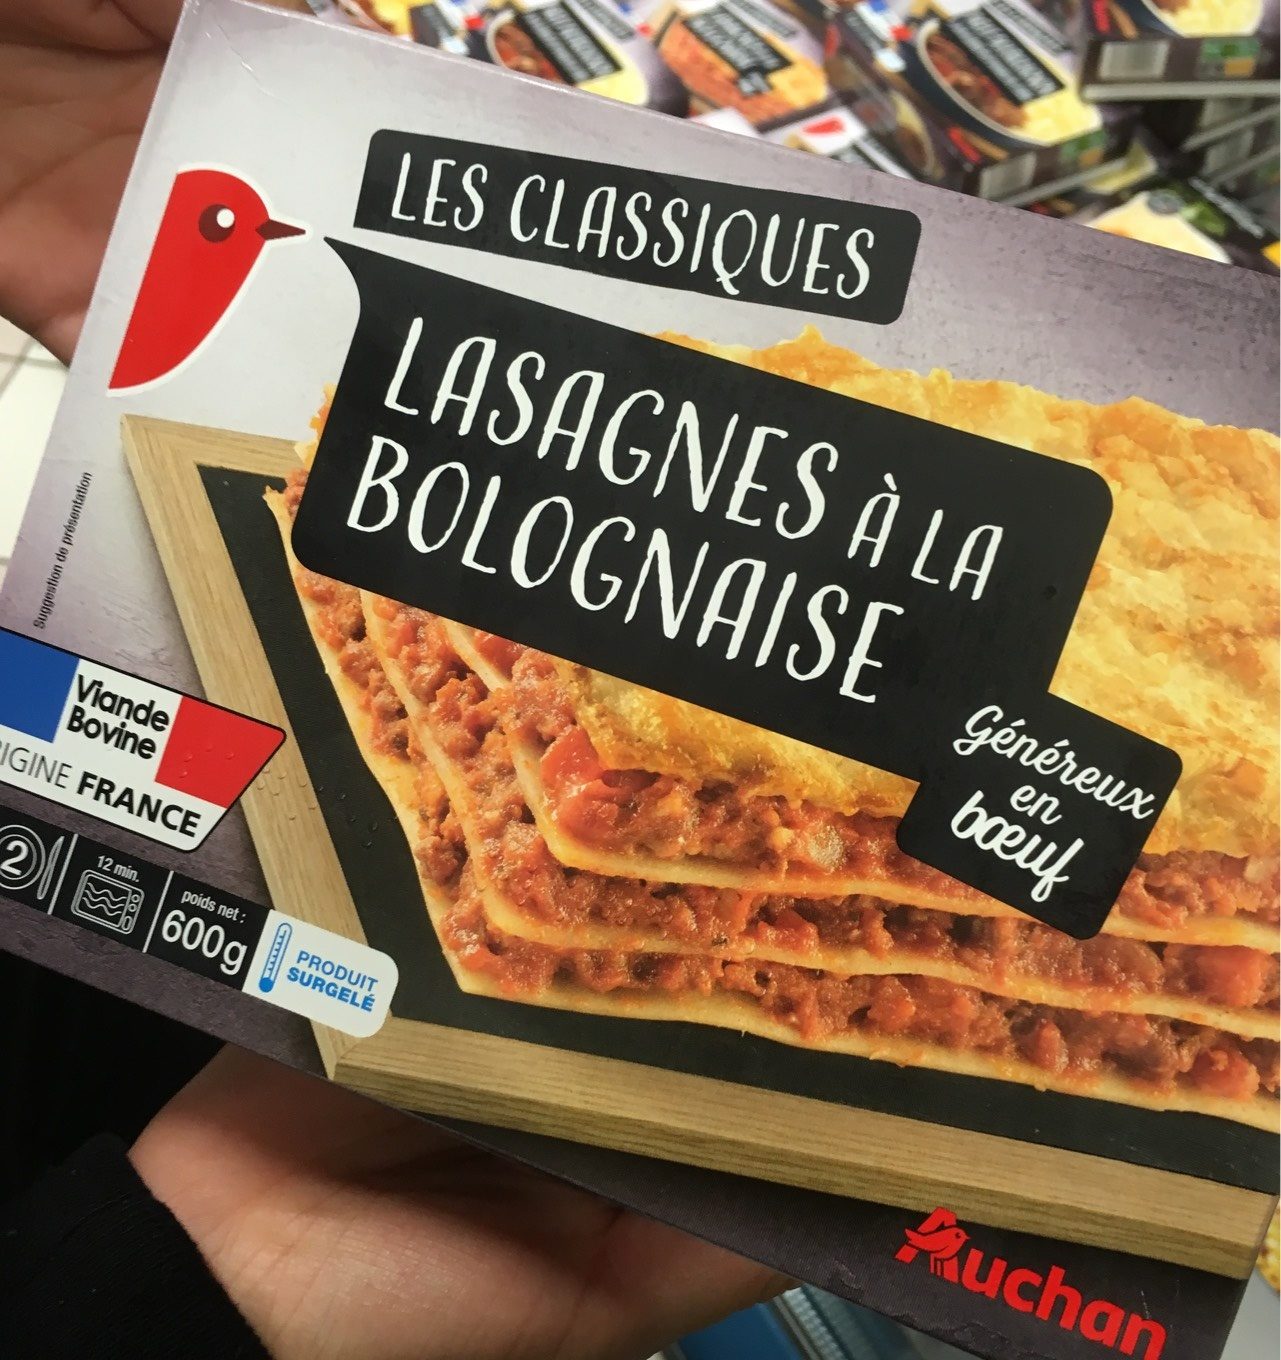 Les classiques - Lasagne à la bolognaise généreux en bœuf - Product - fr